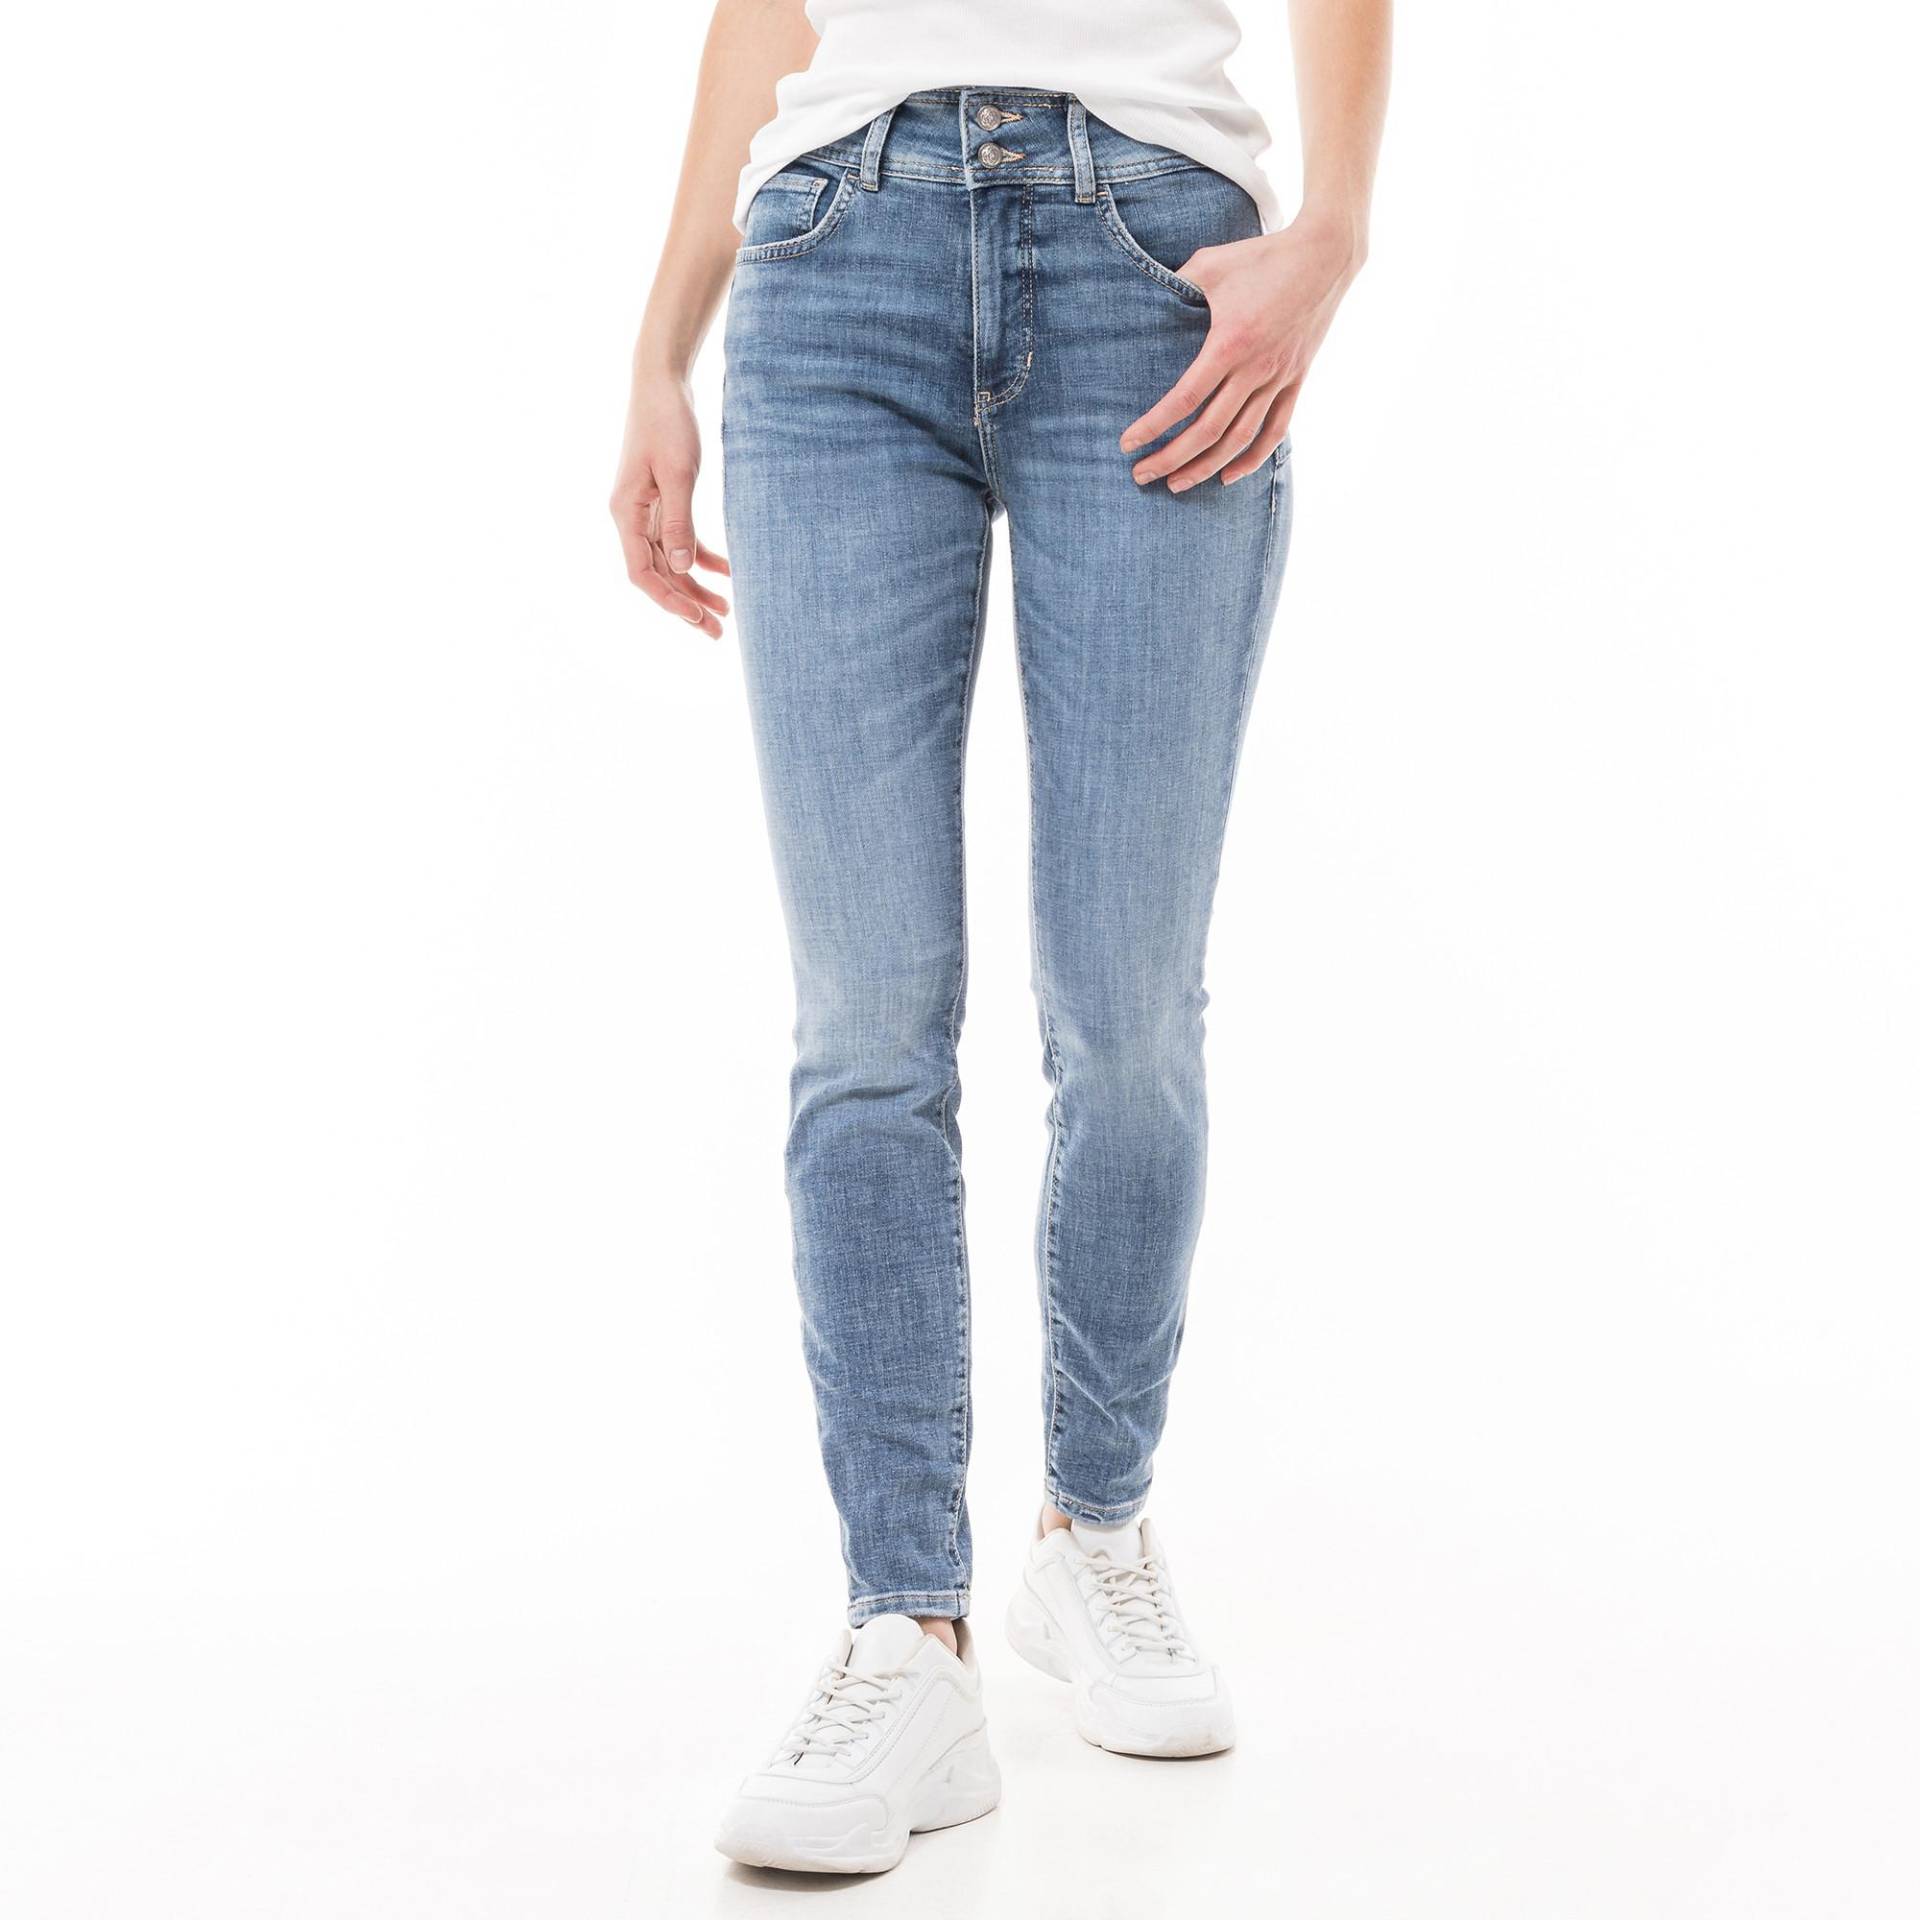 Jeans, Skinny Fit Damen Blau Denim 28 von GUESS